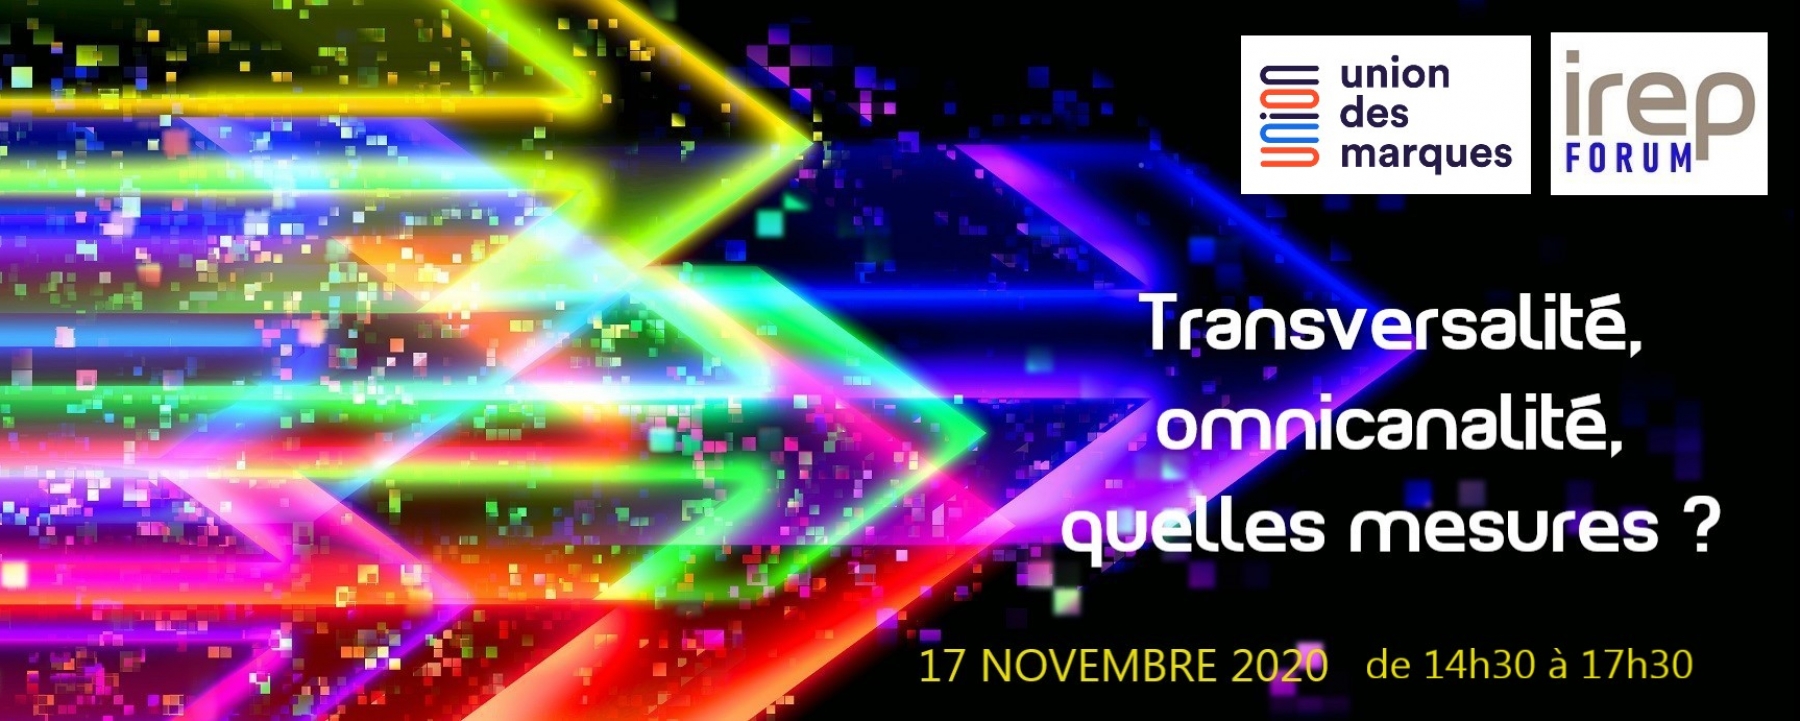 Visuel Irep Forum « Transversalité, omnicanalité, quelles mesures ? », un événement en ligne organisé par l'IREP et l'Union des marques, le 17 novembre 